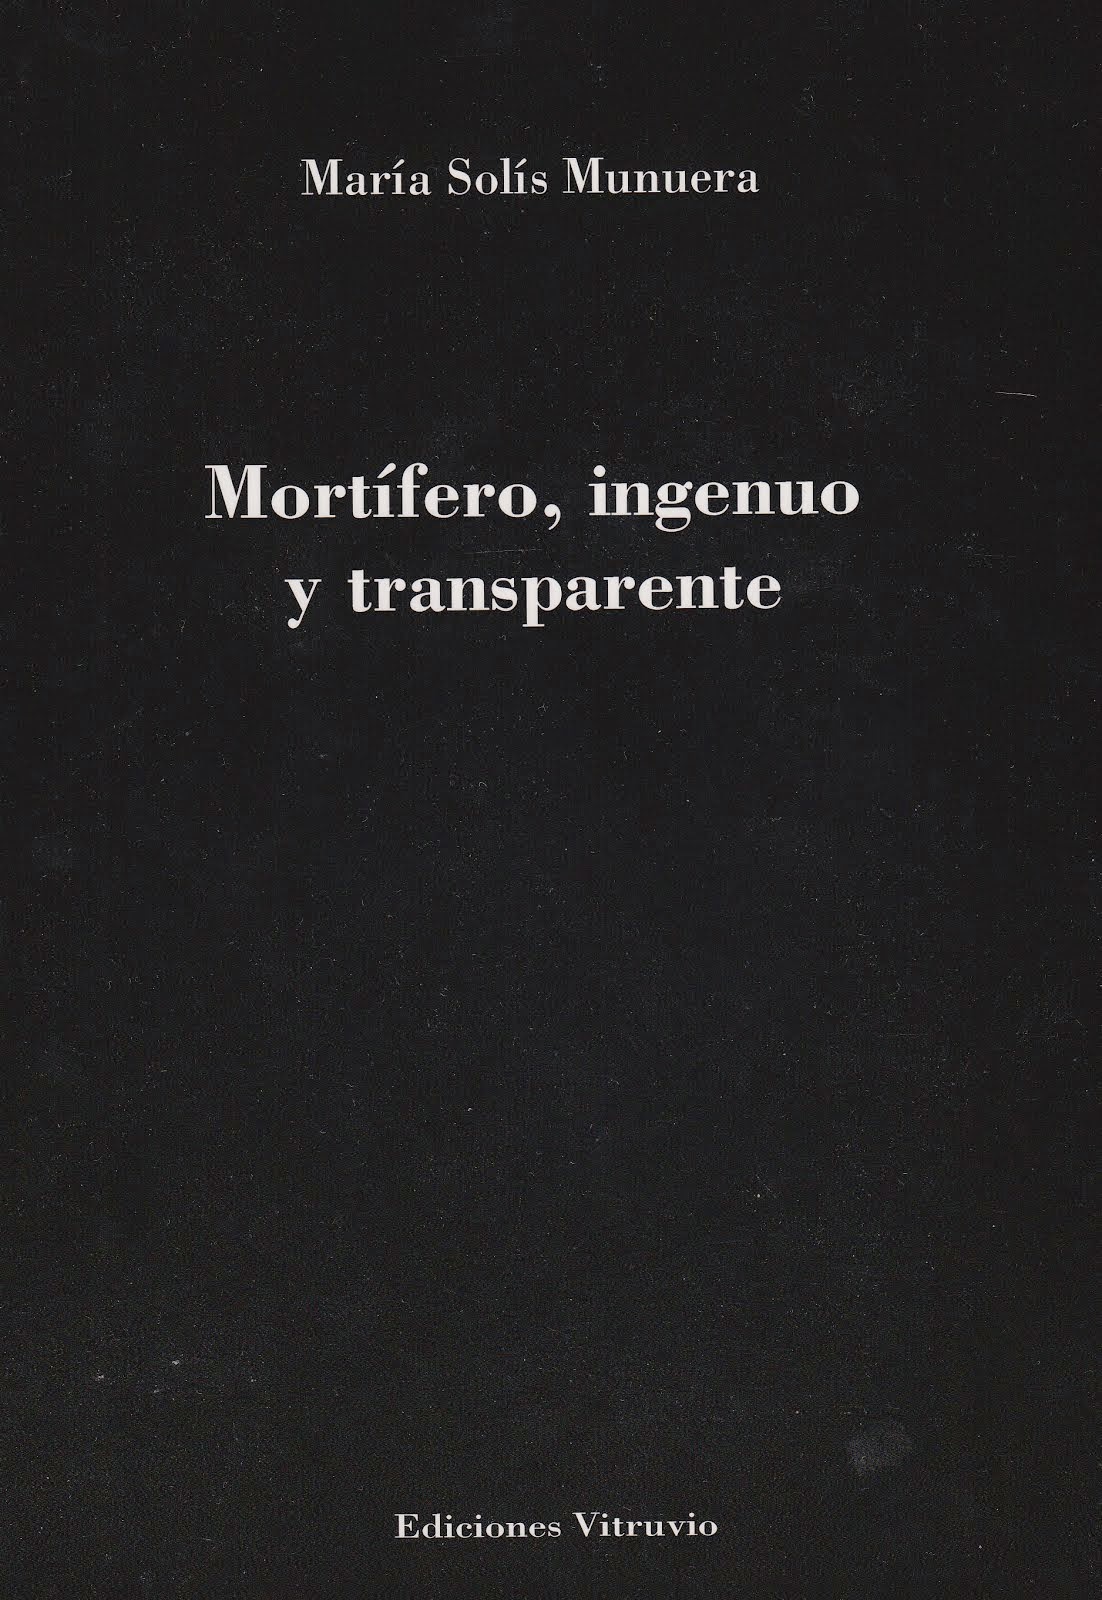 "Mortífero, ingenuo y transparente", 2014